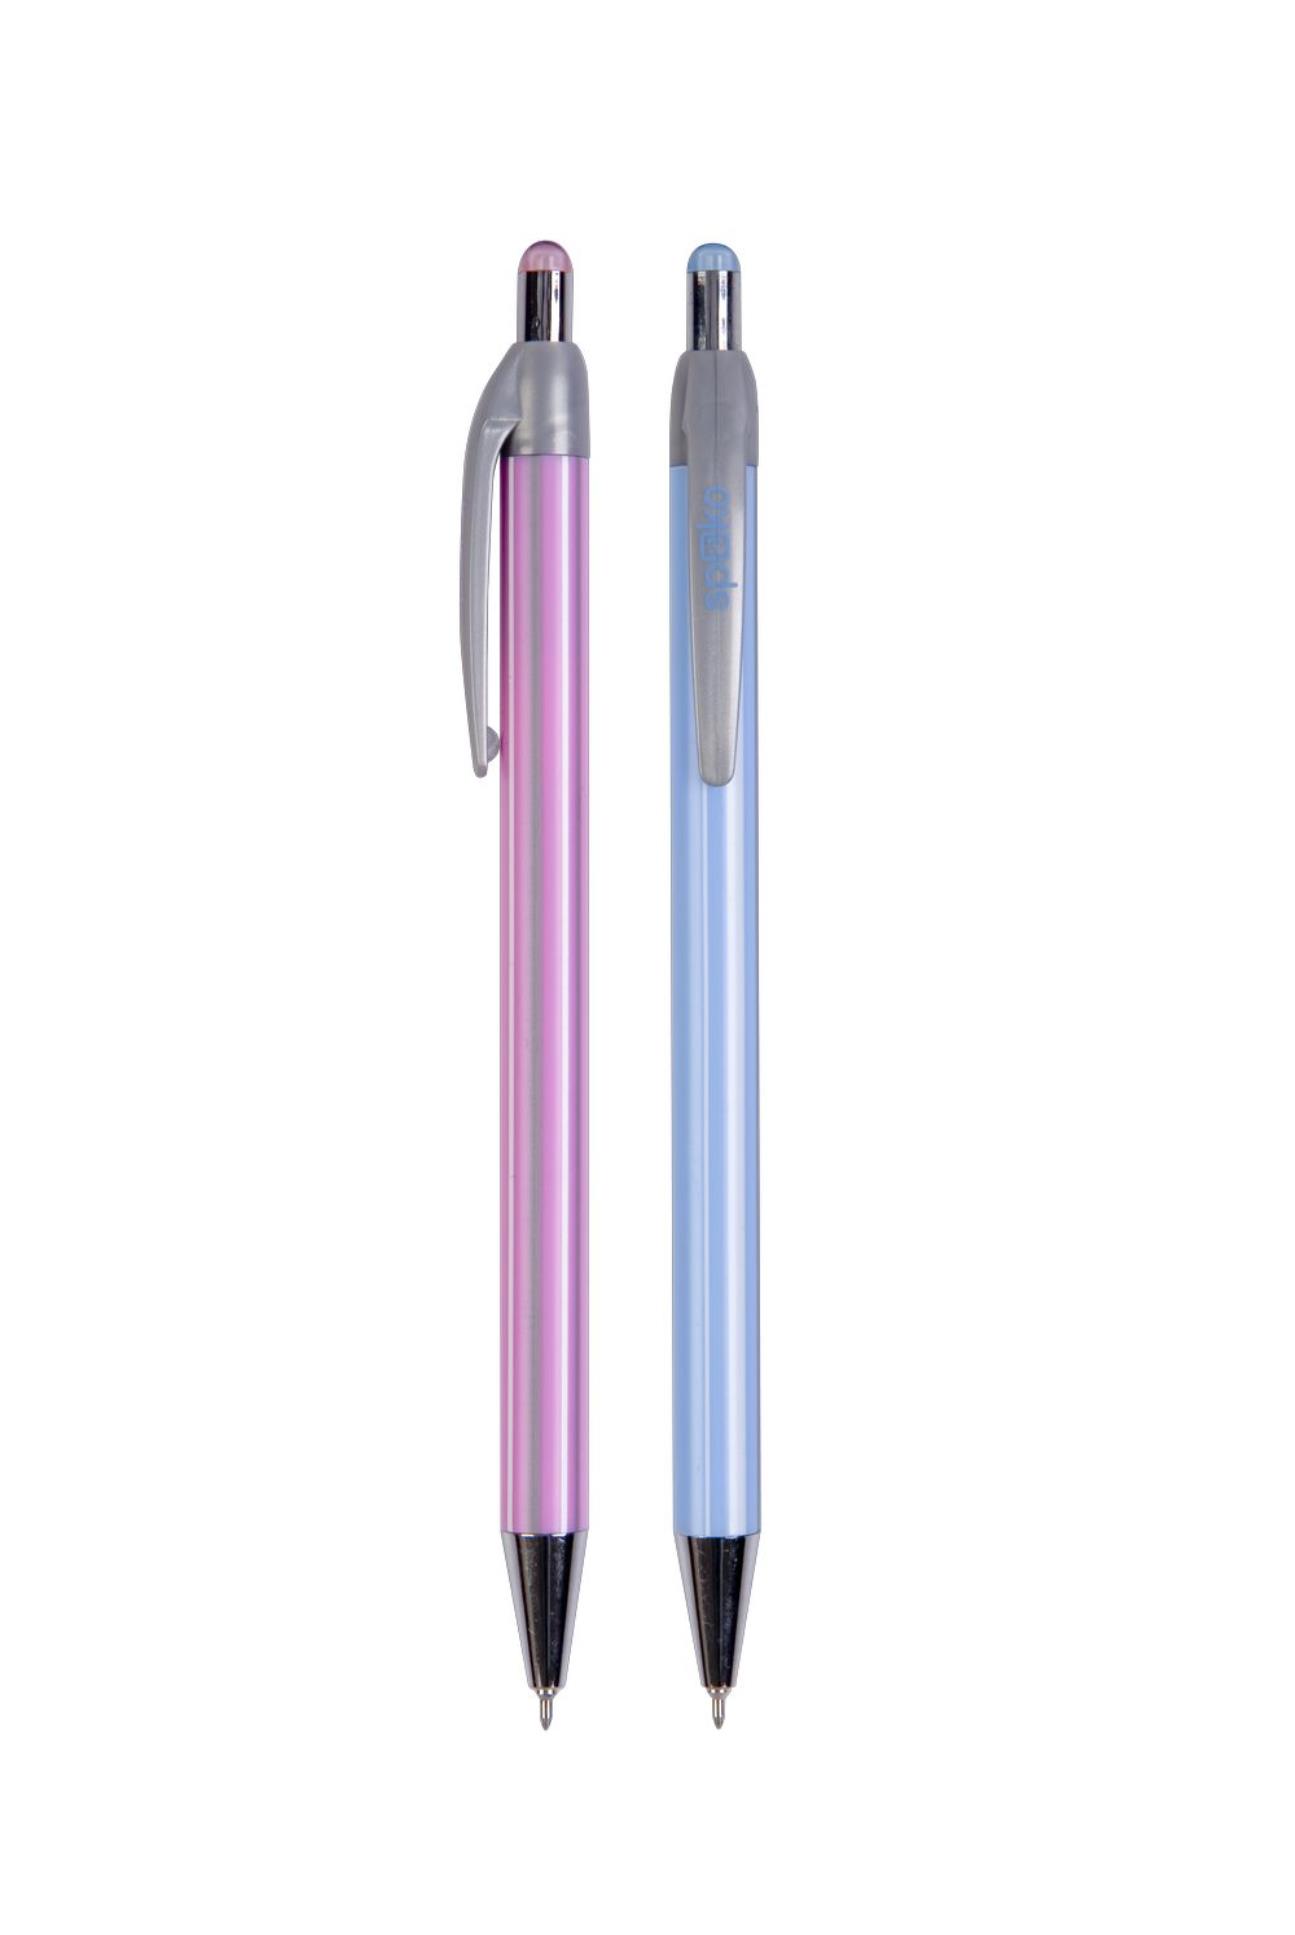 Kuličkové pero Spoko Stripes - modrá náplň, 0,3 mm